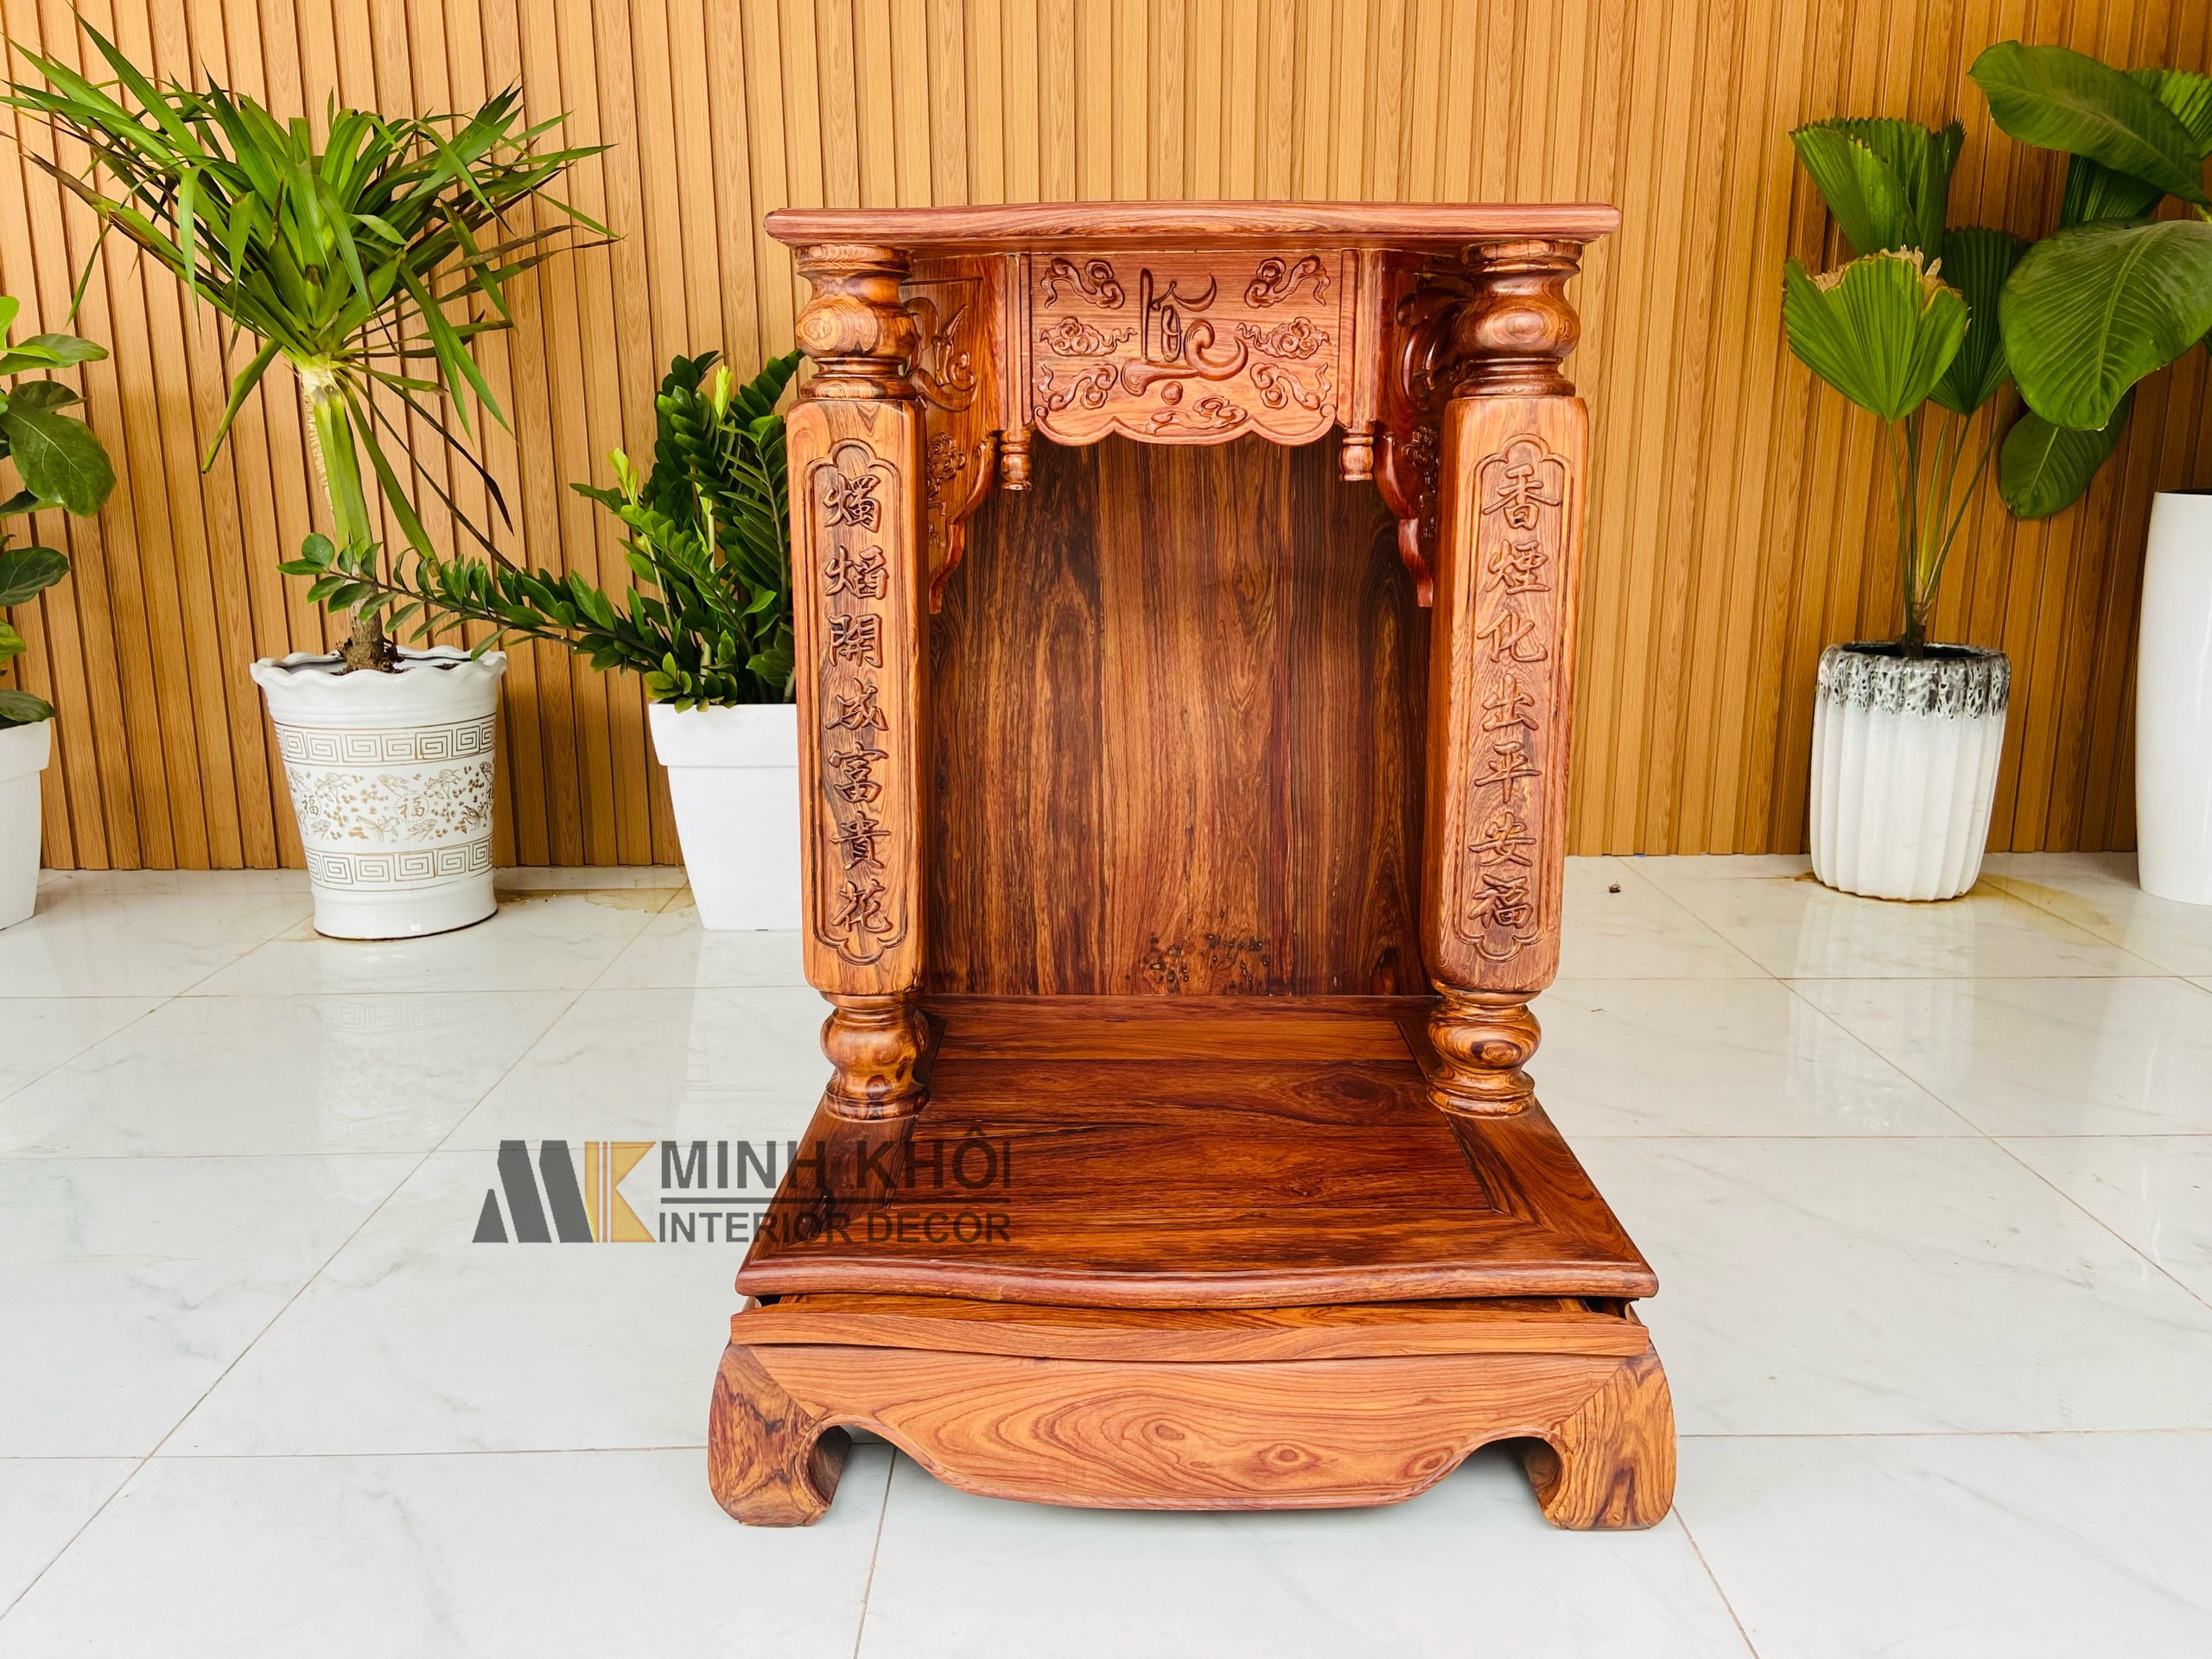 Bàn thờ thần tài đẹp gỗ cẩm lai - BTTT907 sẽ trở thành một tài sản quý giá trong nhà bạn. Thiết kế đẹp mắt và chất lượng cao, bàn thờ này sẽ đem đến cho bạn ánh sáng và may mắn trong tương lai. Hãy khởi đầu một sự thịnh vượng mới với bàn thờ thần tài này.